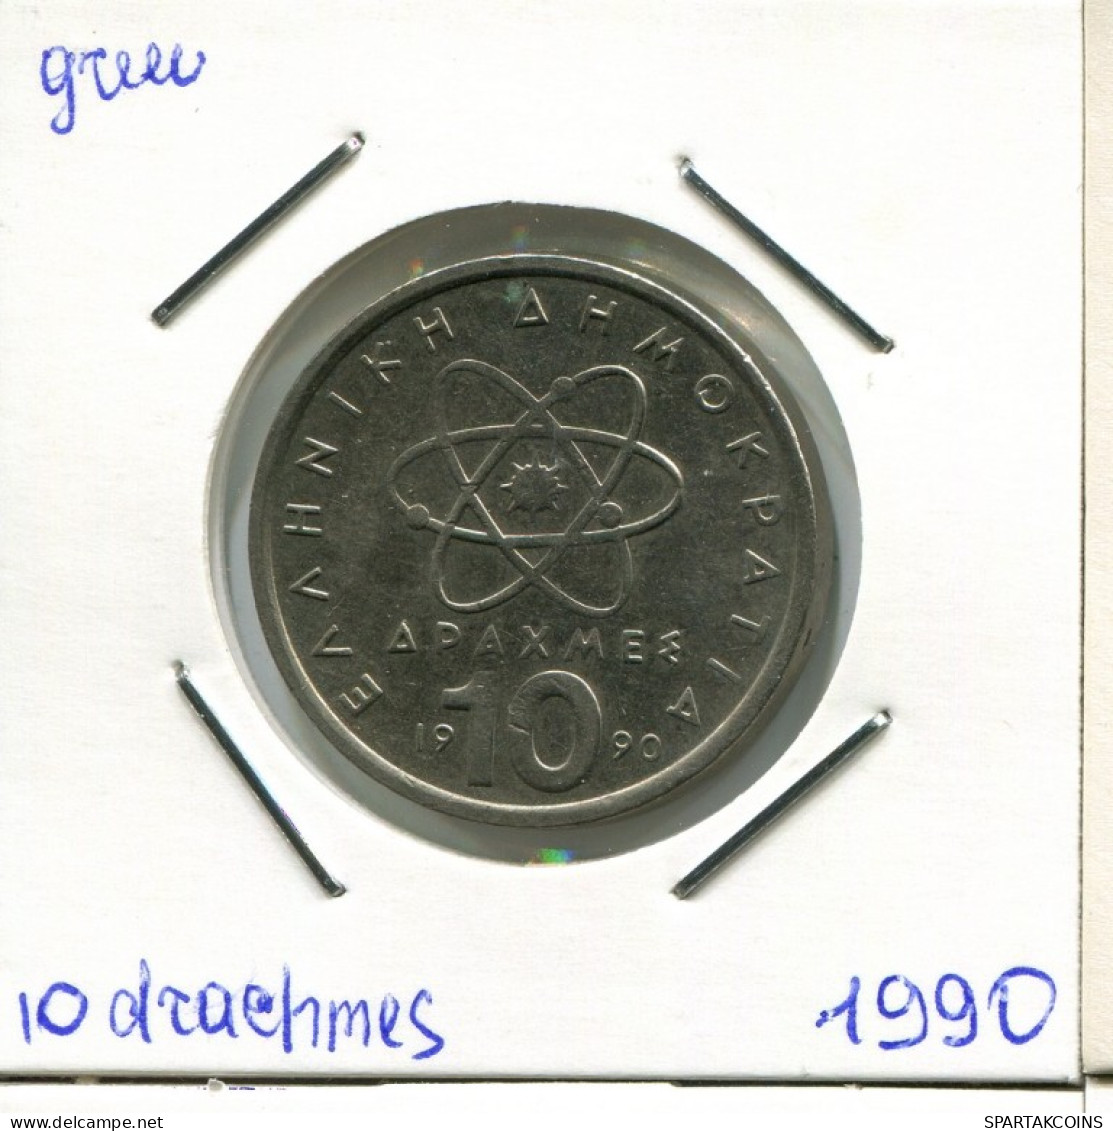 10 DRACHMES 1990 GRECIA GREECE Moneda #AK421.E.A - Greece